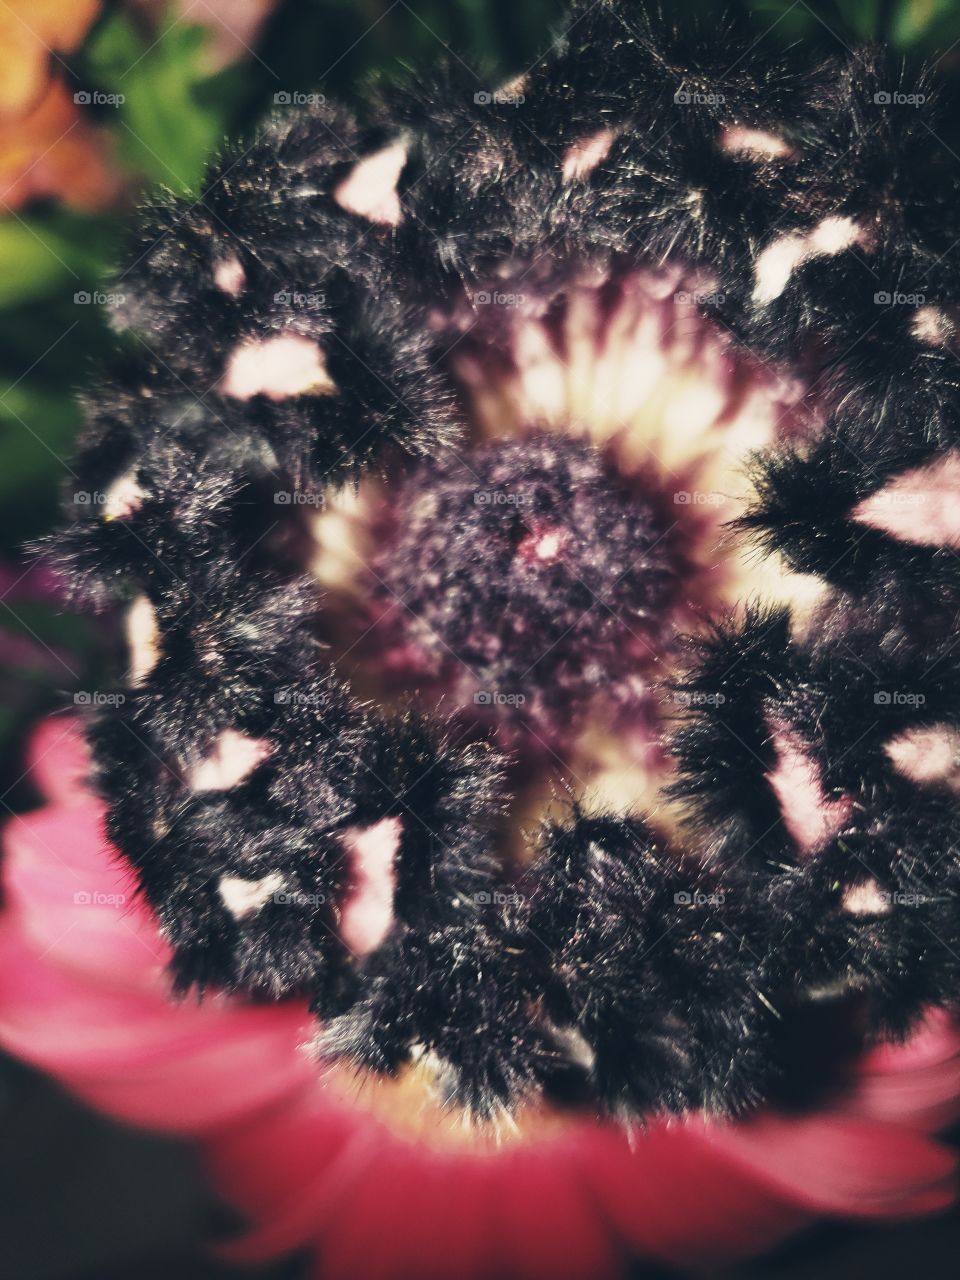 strange flower